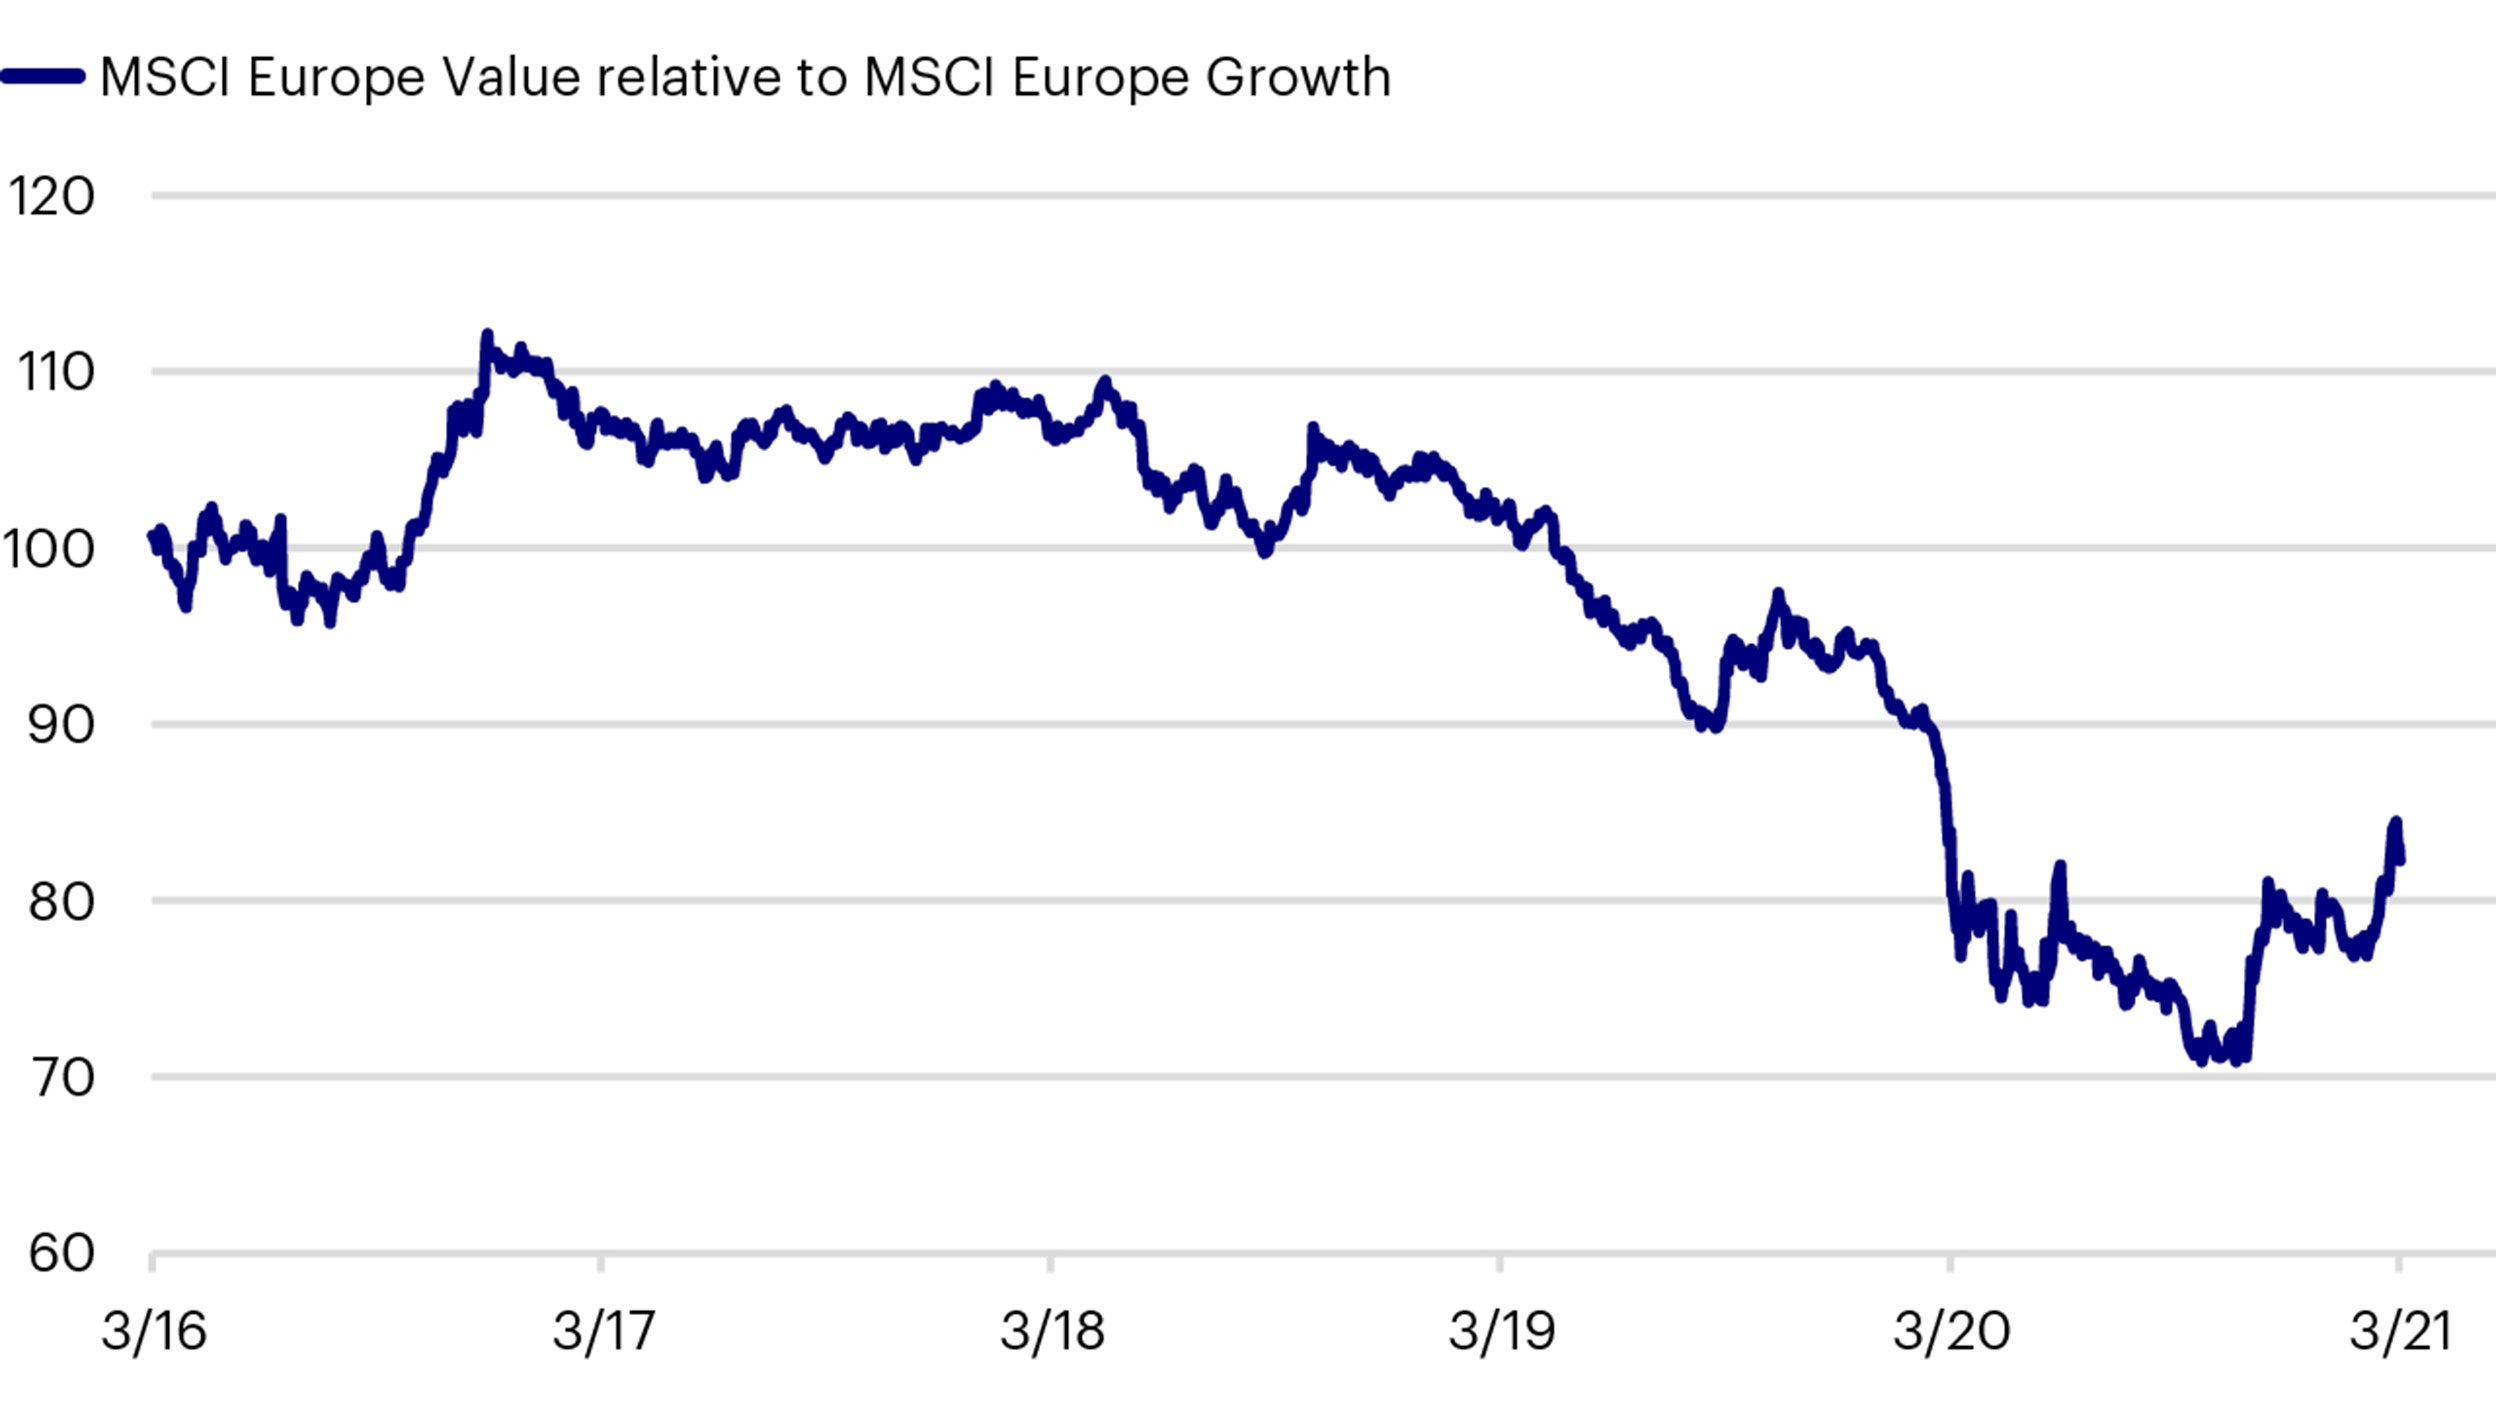 MSCI Europe Value versus MSCI Europe Growth